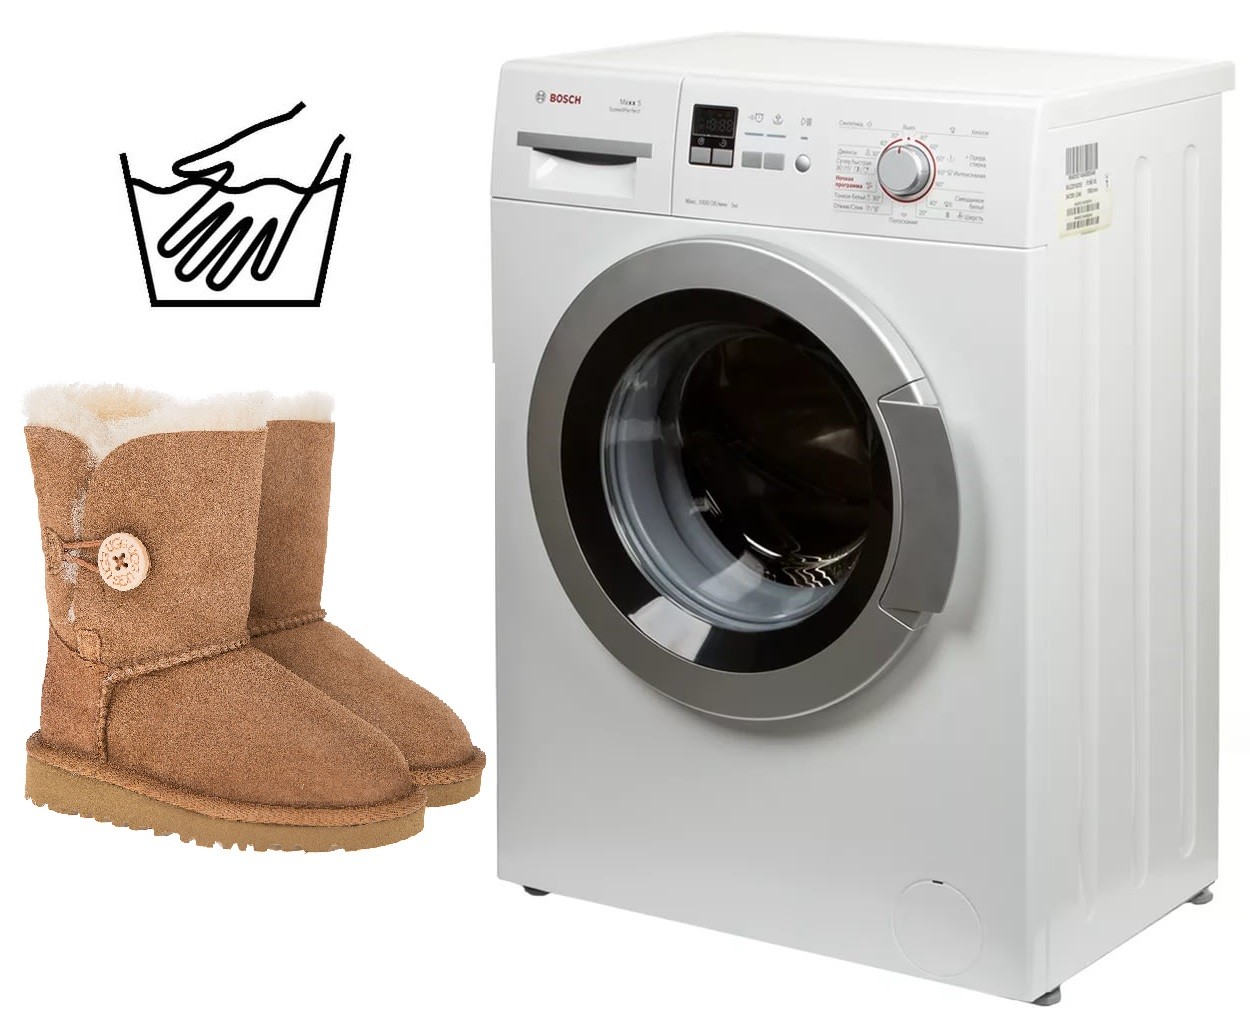 Bir çamaşır makinesinde ugg botlar nasıl yıkanır